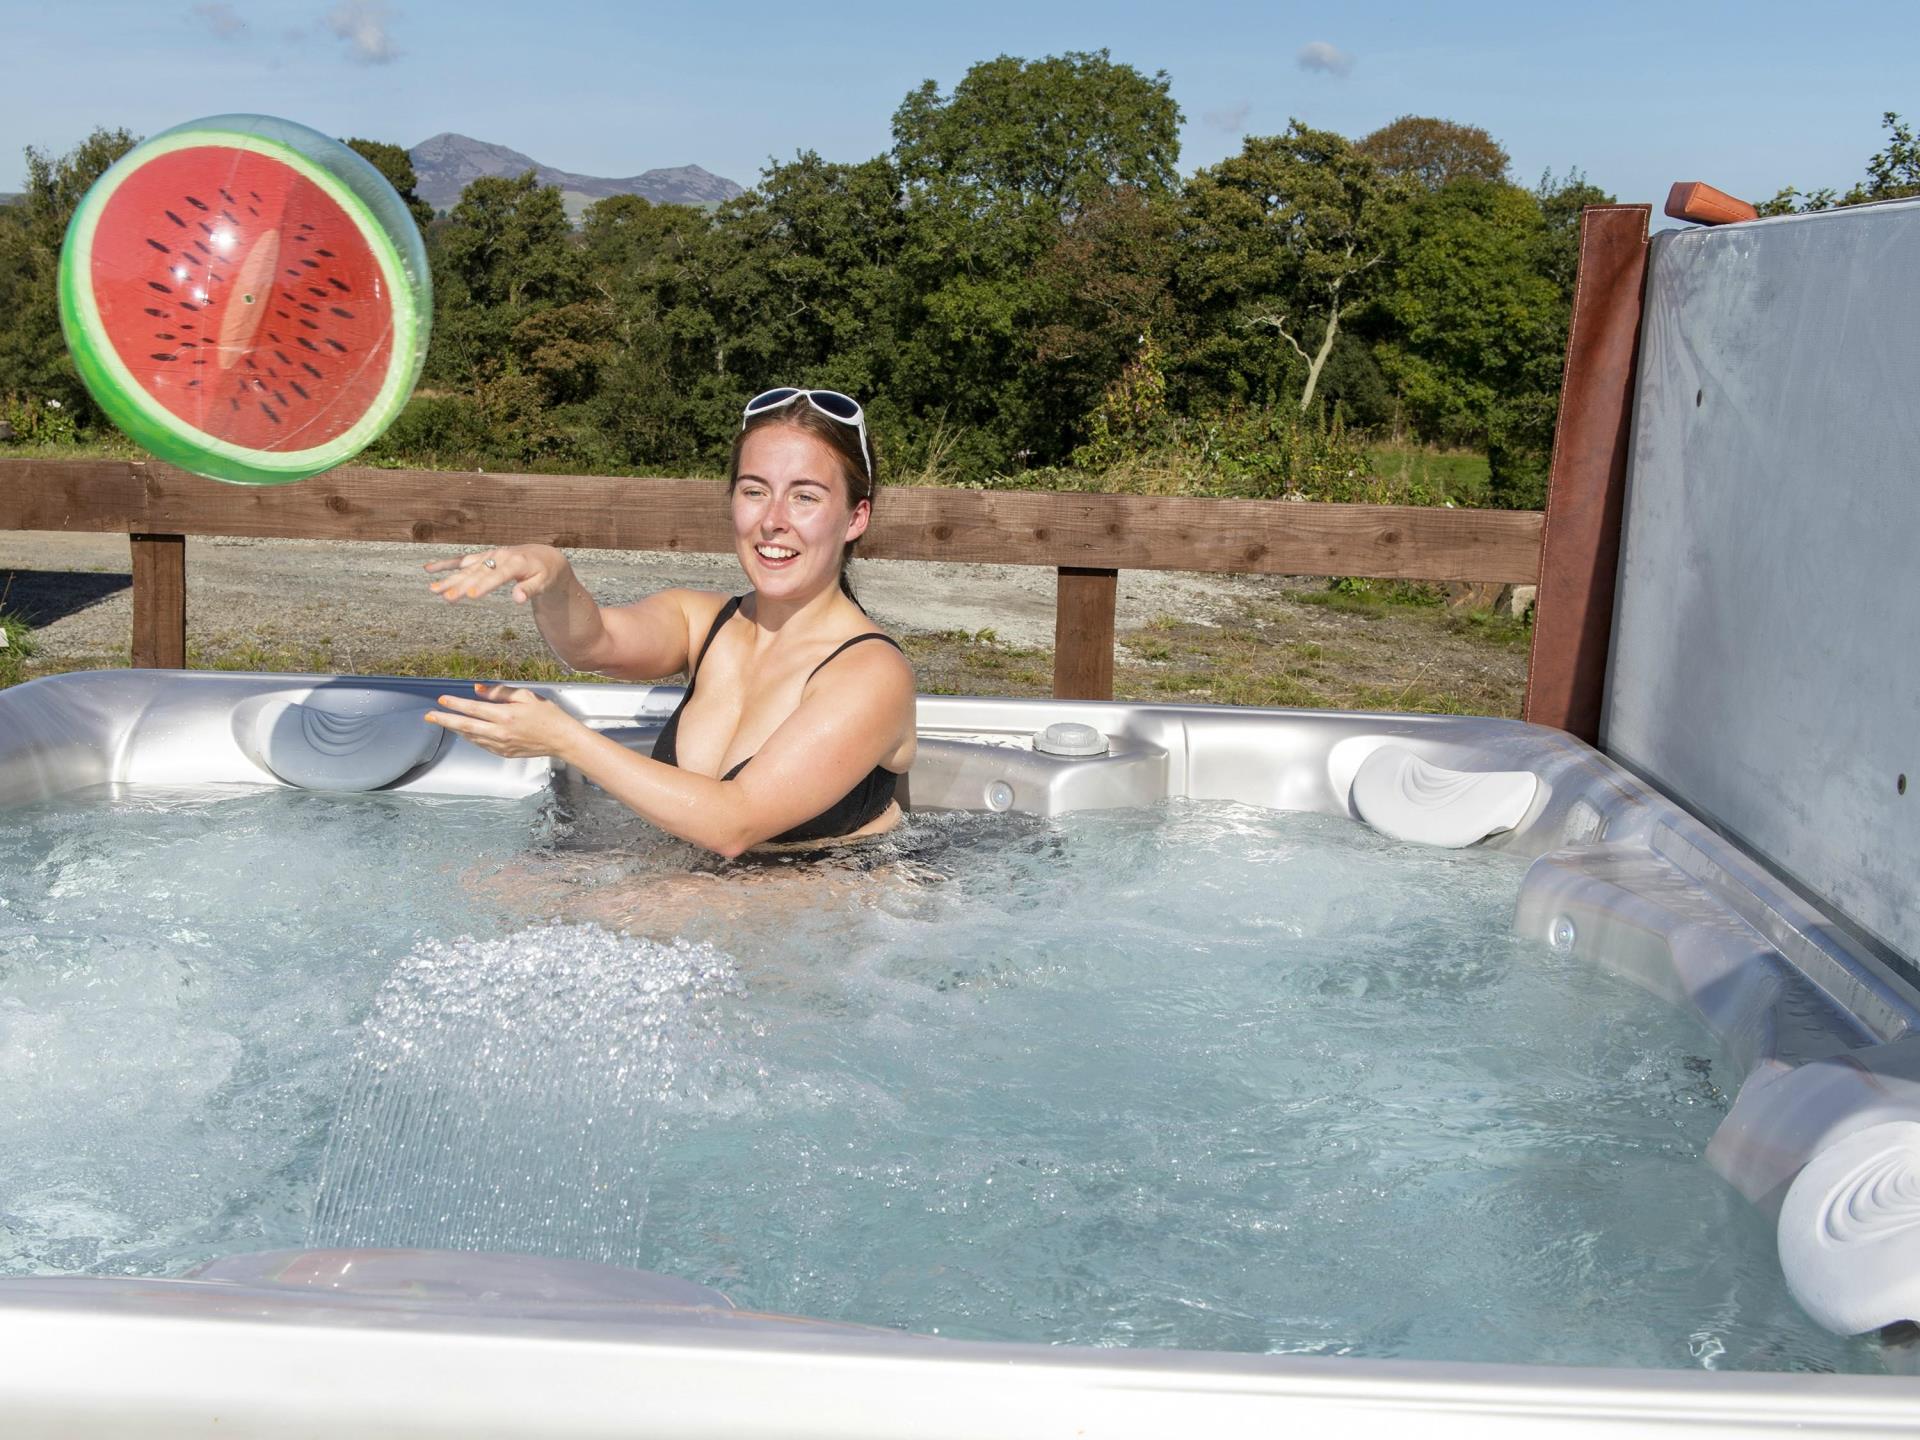 Enjoy the Hot tub at Llwynbeuno Cottage